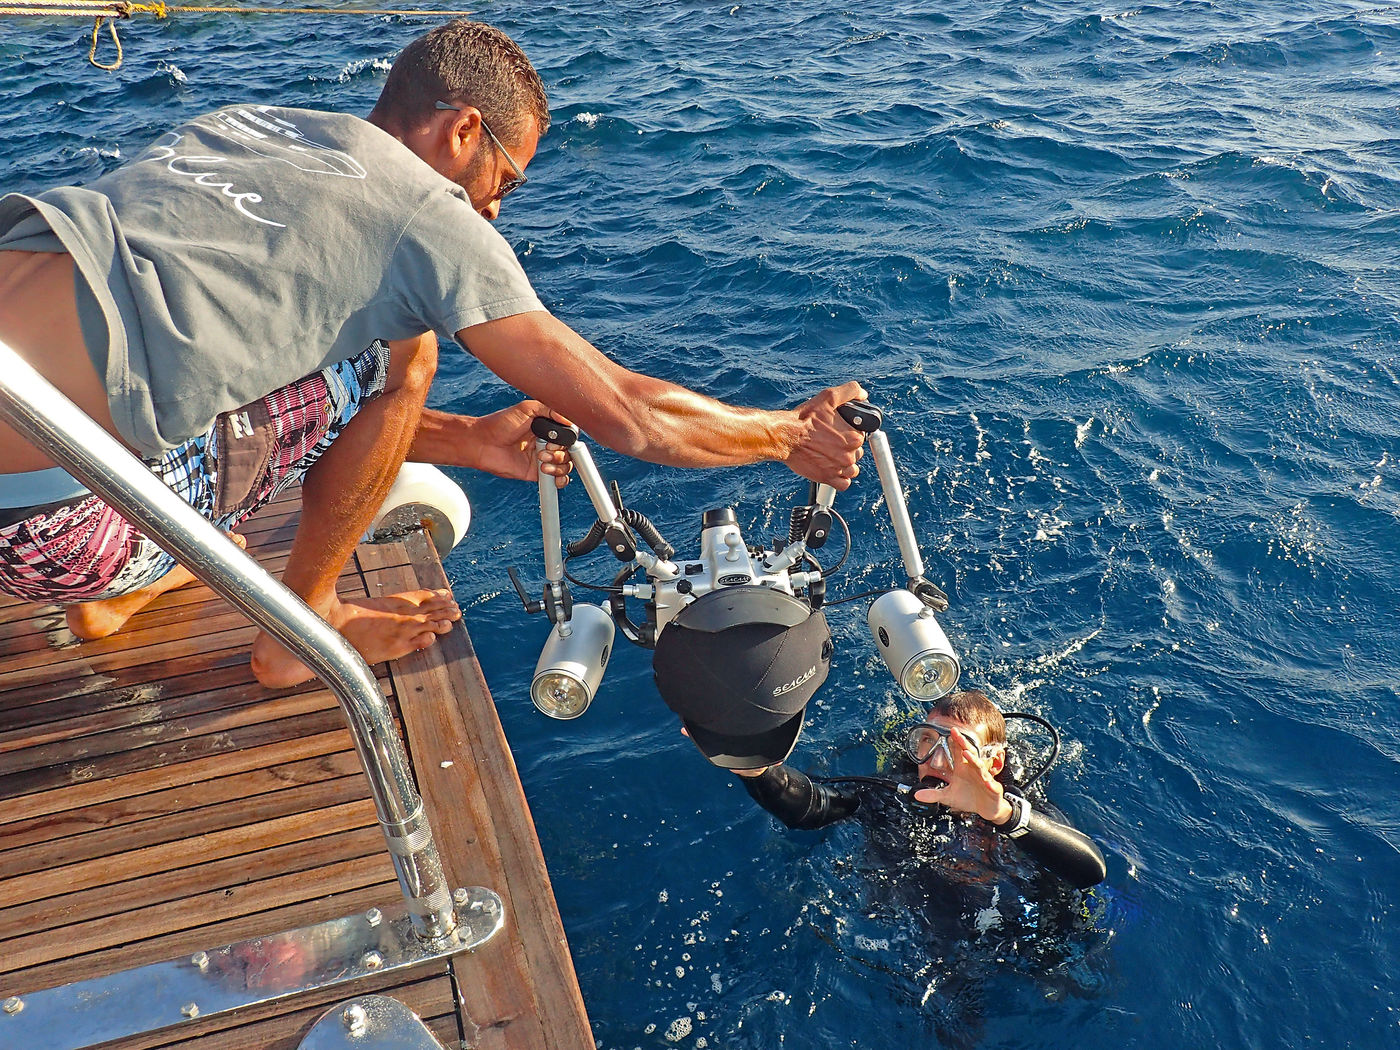 Anreichen lassen: Die Unterwasserkamera sollte man sich vom Schiff mit Domeportschutz anreichen lassen. Die Abdeckung kann man während des Tauchgangs ins Jacket stecken.